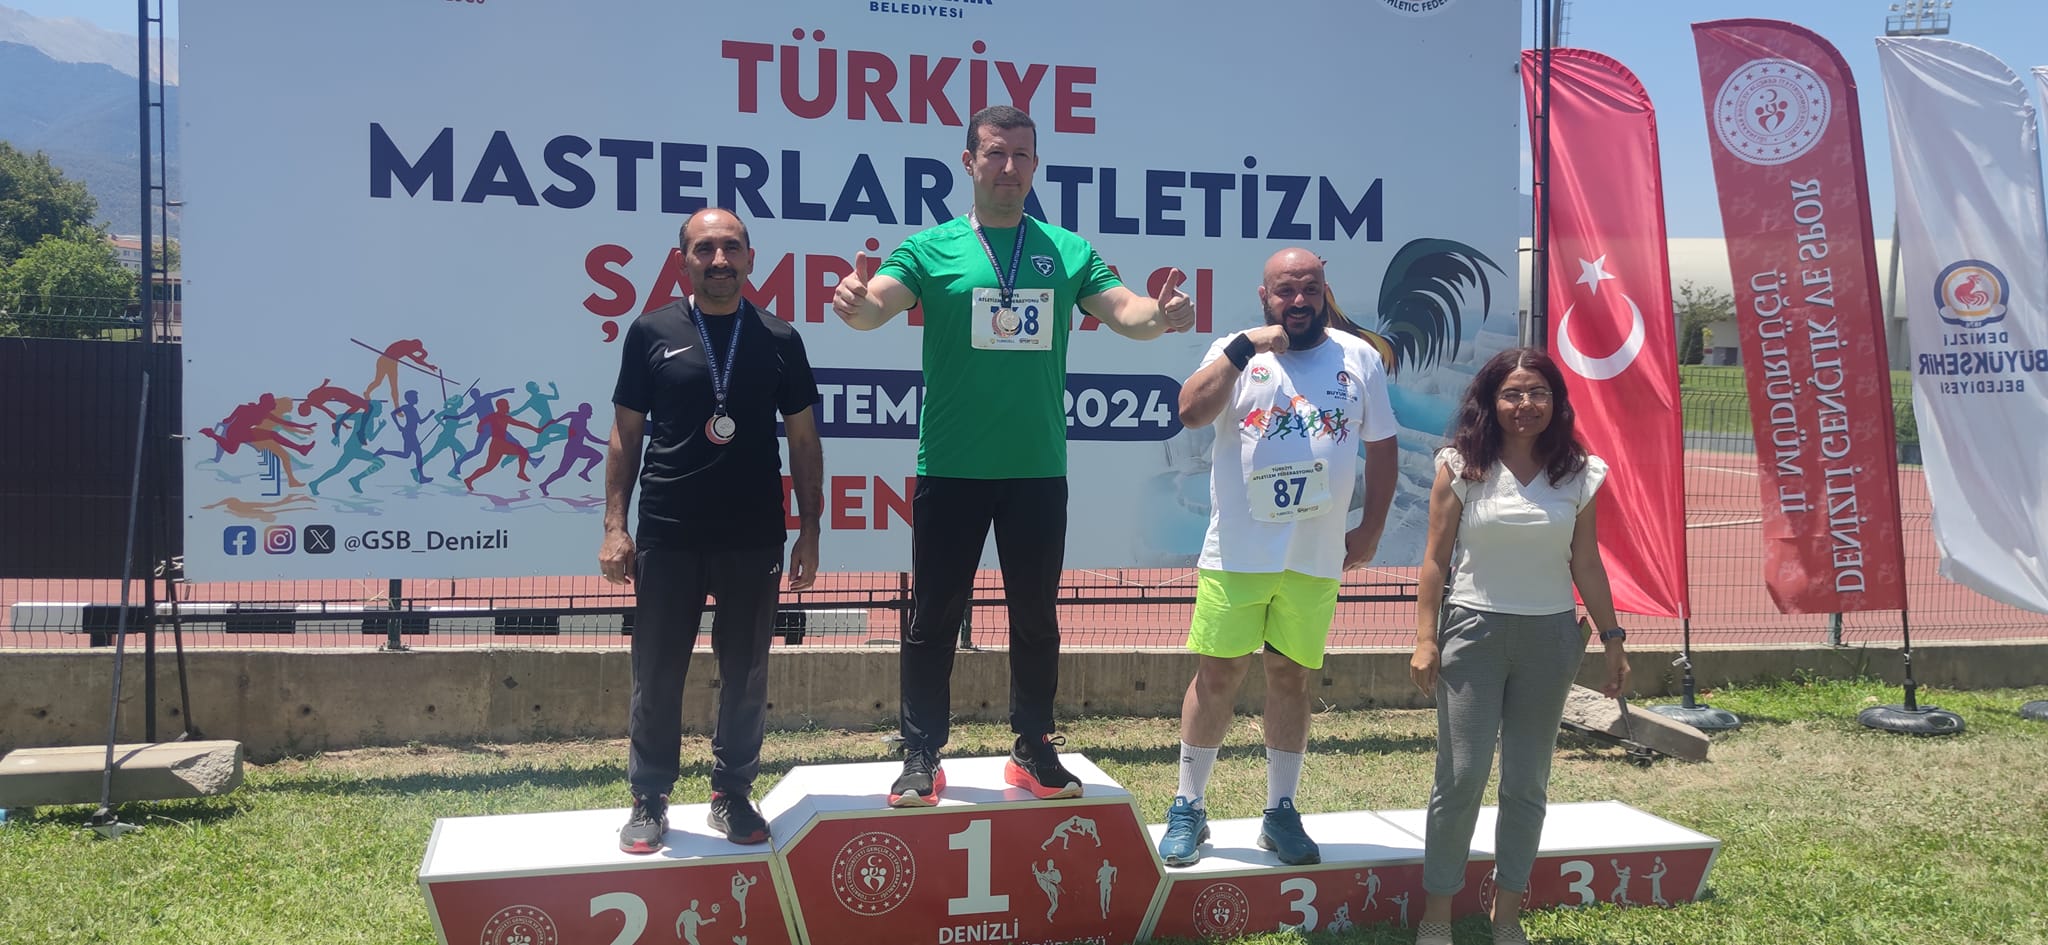 Erbaalı Sporcudan 3 Madalya.